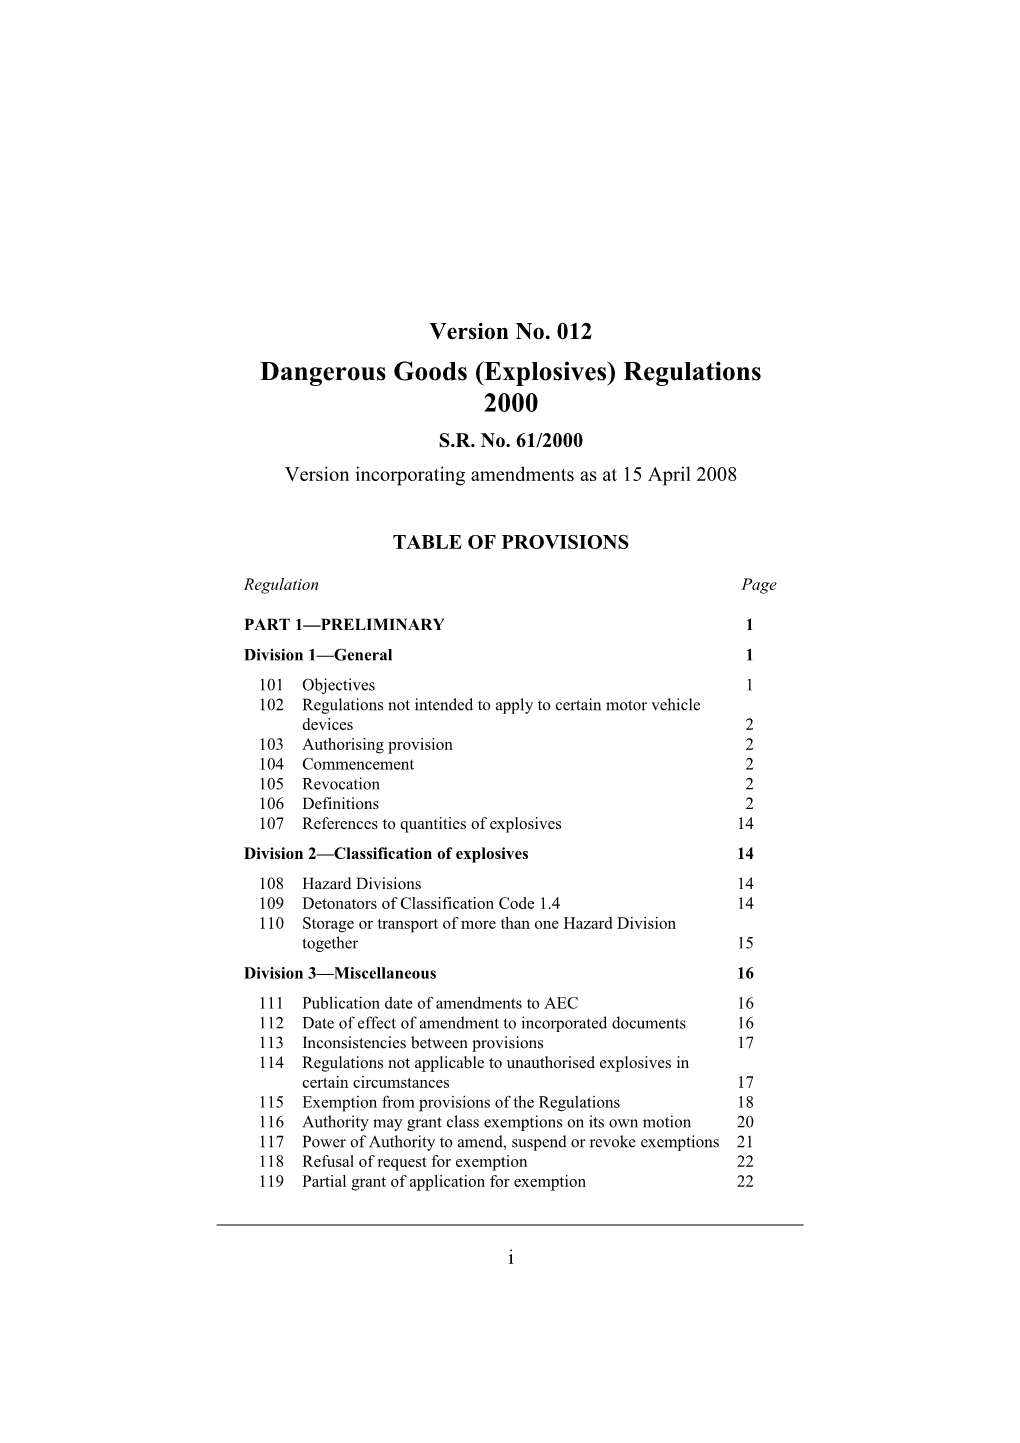 Dangerous Goods (Explosives) Regulations 2000